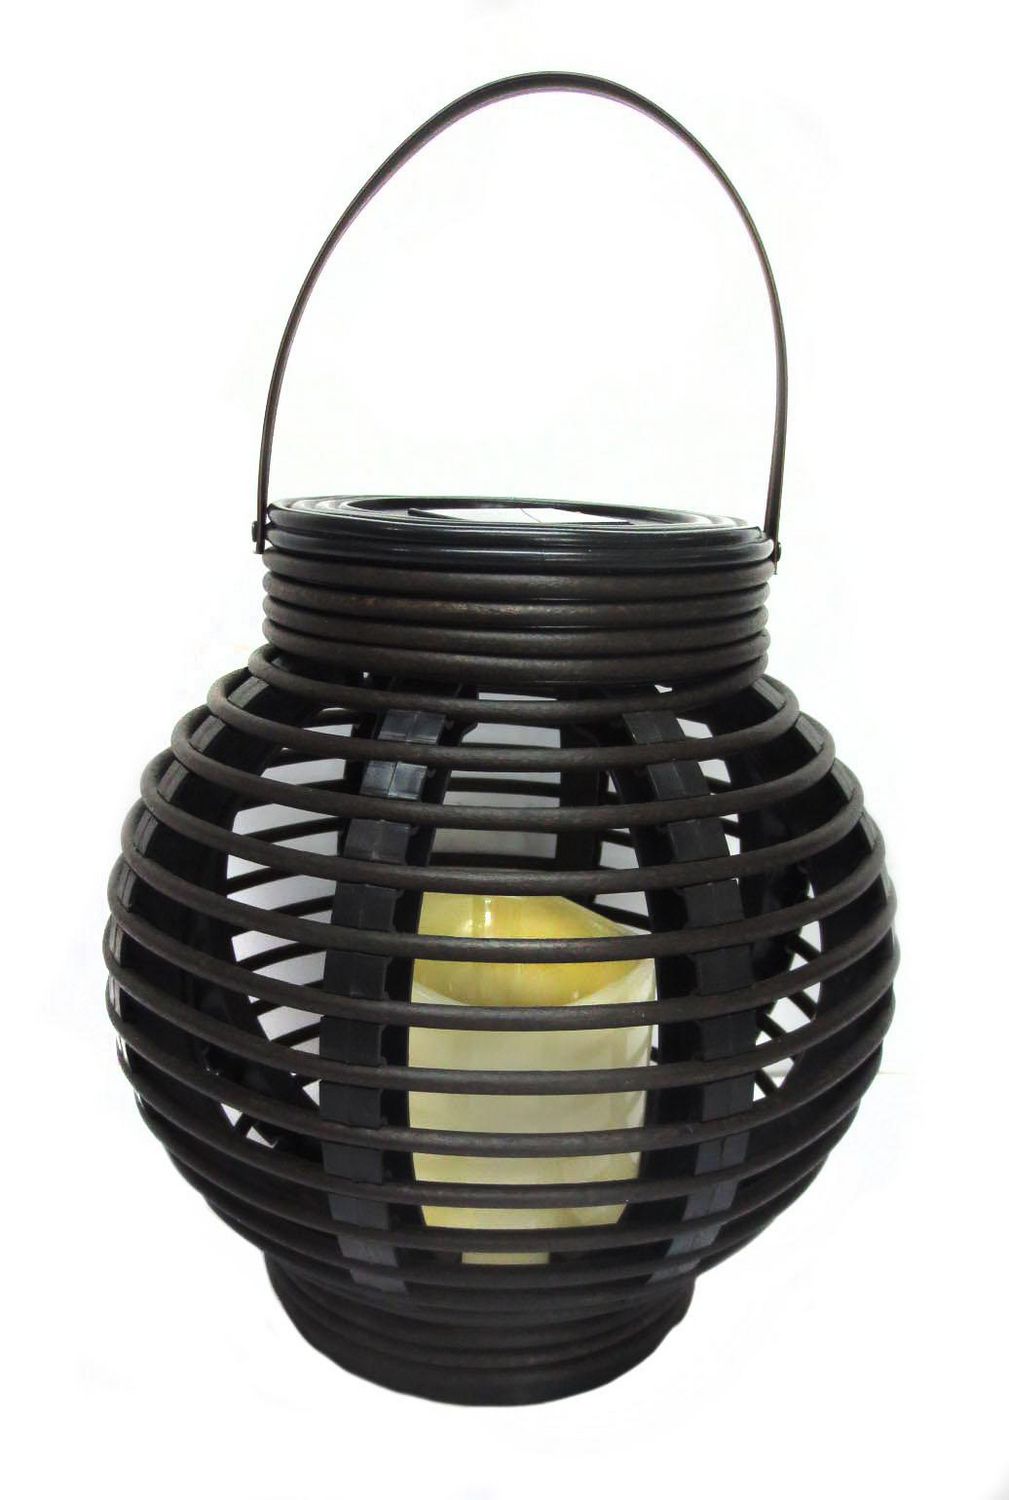 japanese lantern lamps walmart